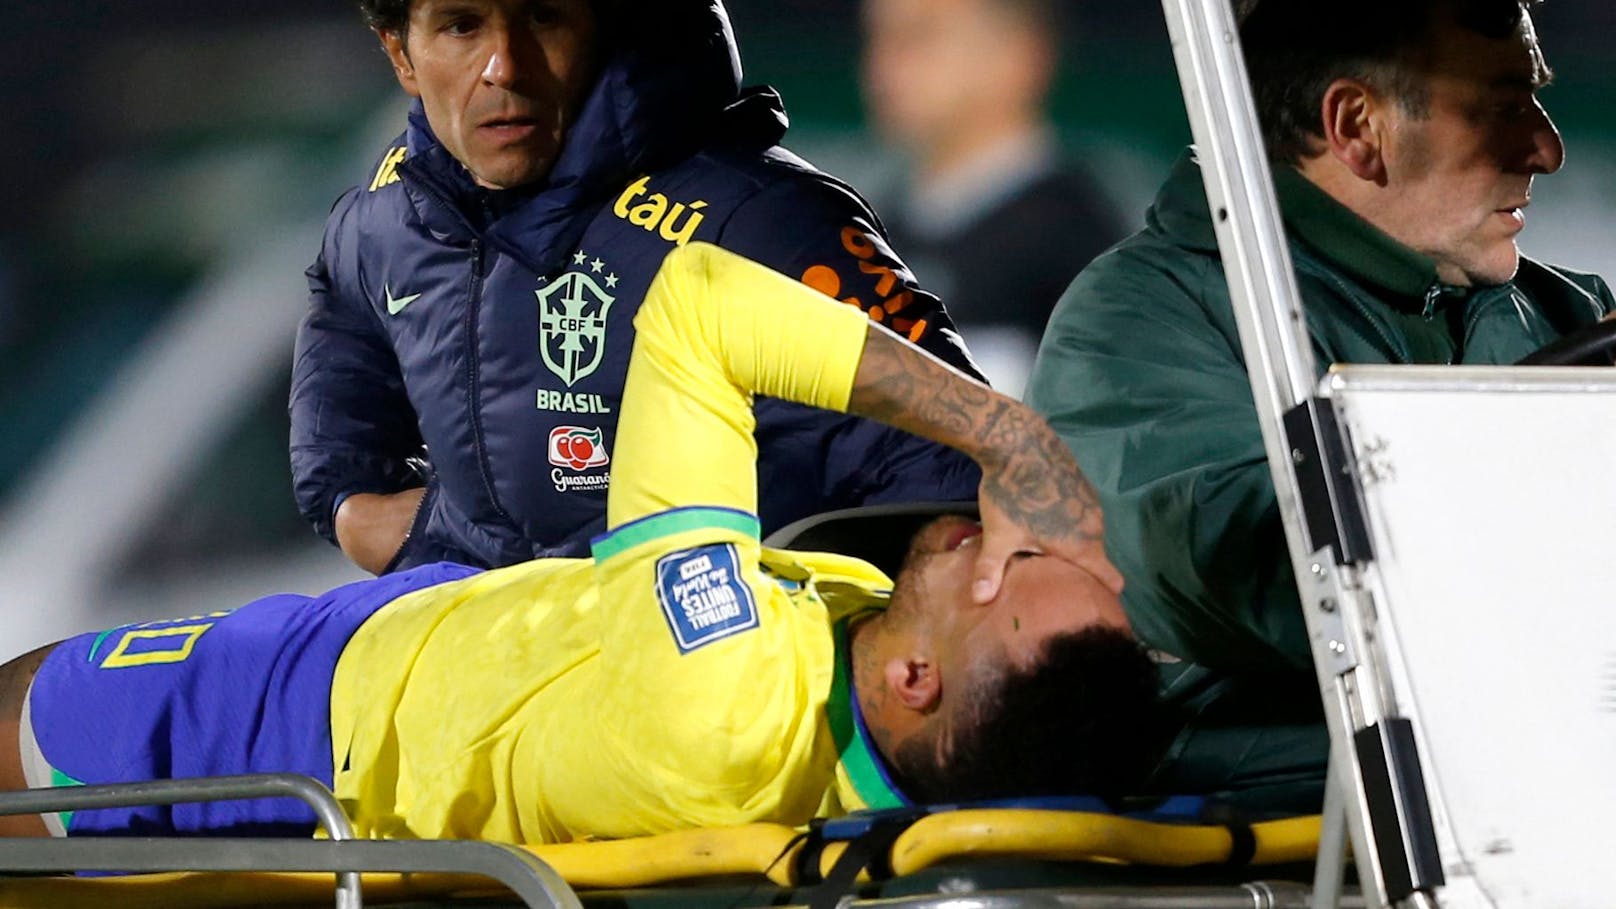 Neymar traurig: "Das ist der schlimmste Moment"